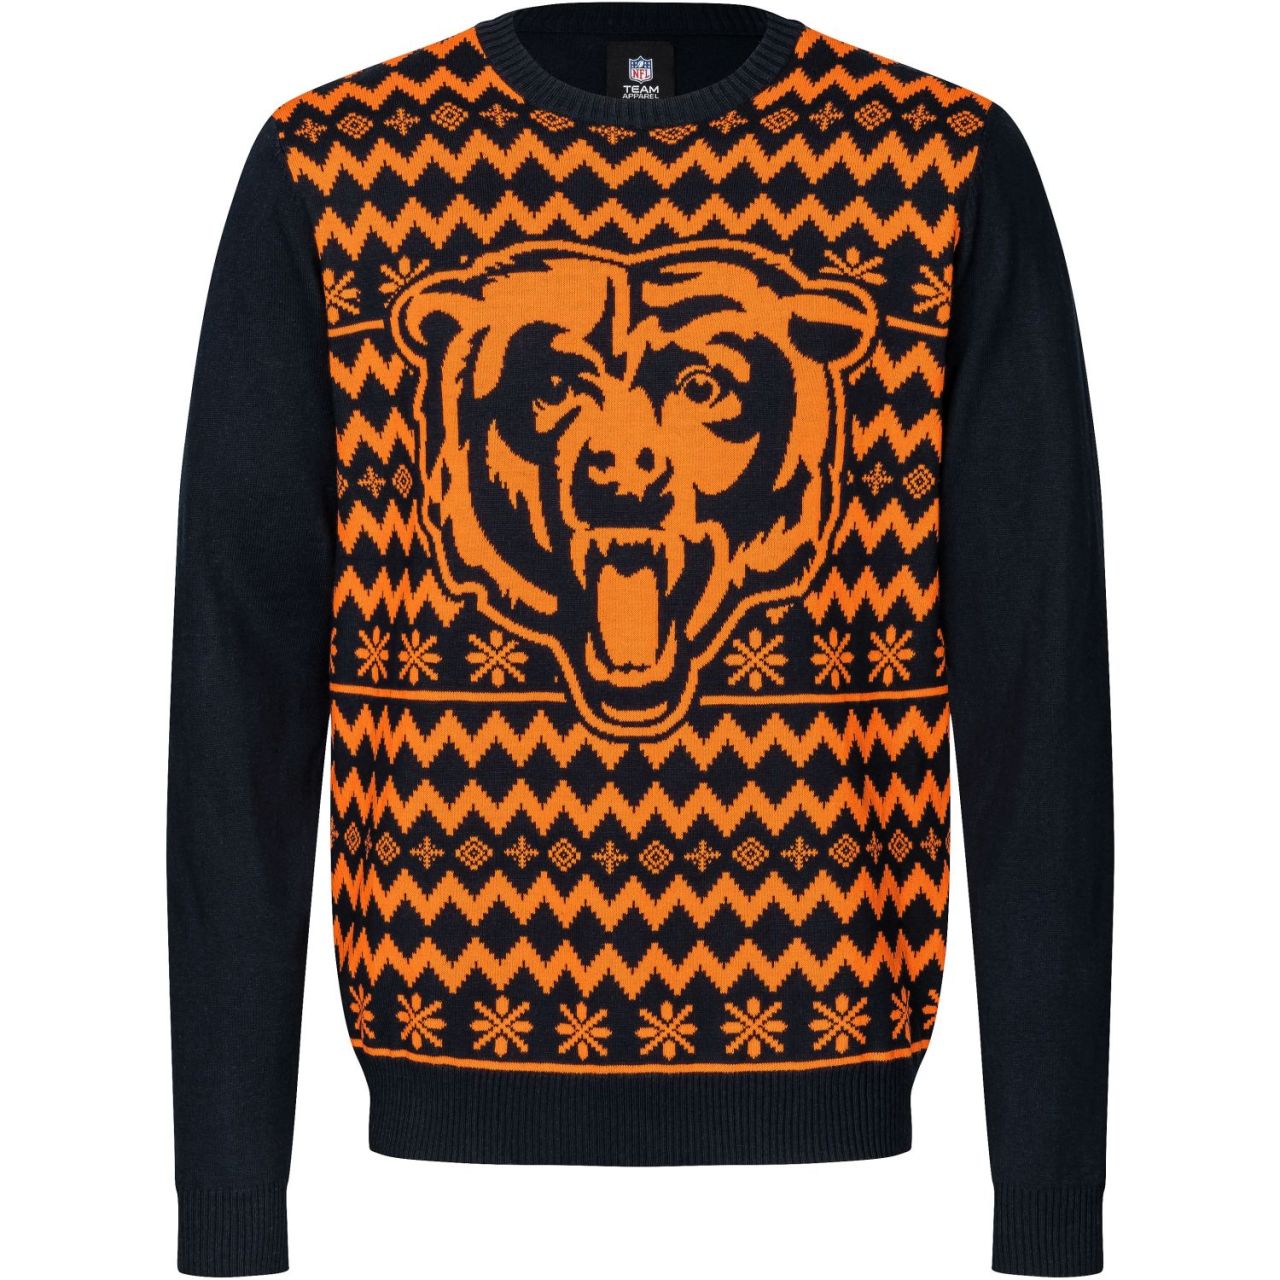 NFL Winter Sweater XMAS Strick Pullover Chicago Bears von FOCO